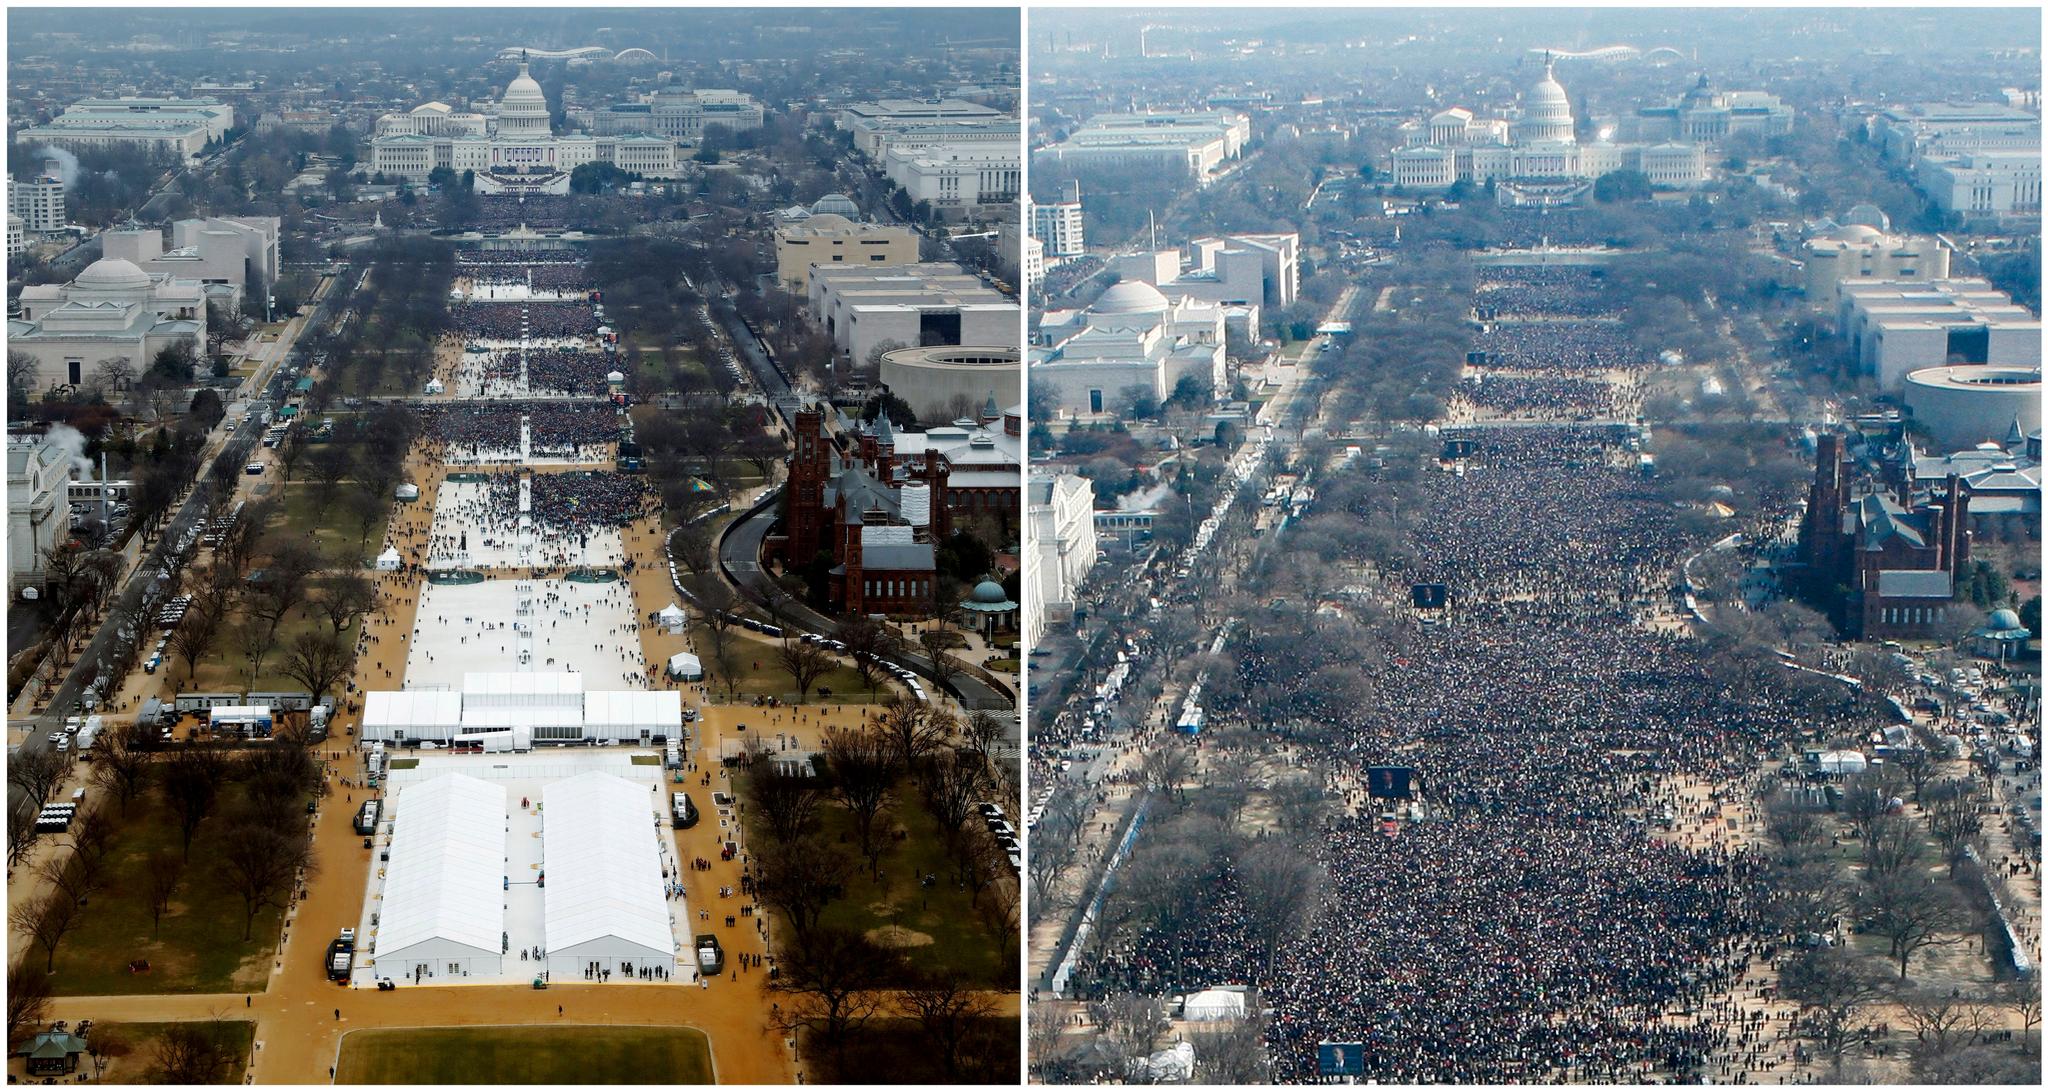 En sammenligning av bilder tatt ved innsettelsesseremonien til Donald Trump i 2017 (til venstre) og Barack Obama i 2009 (til høyre). Begge bildene er tatt like før seremoniene startet.